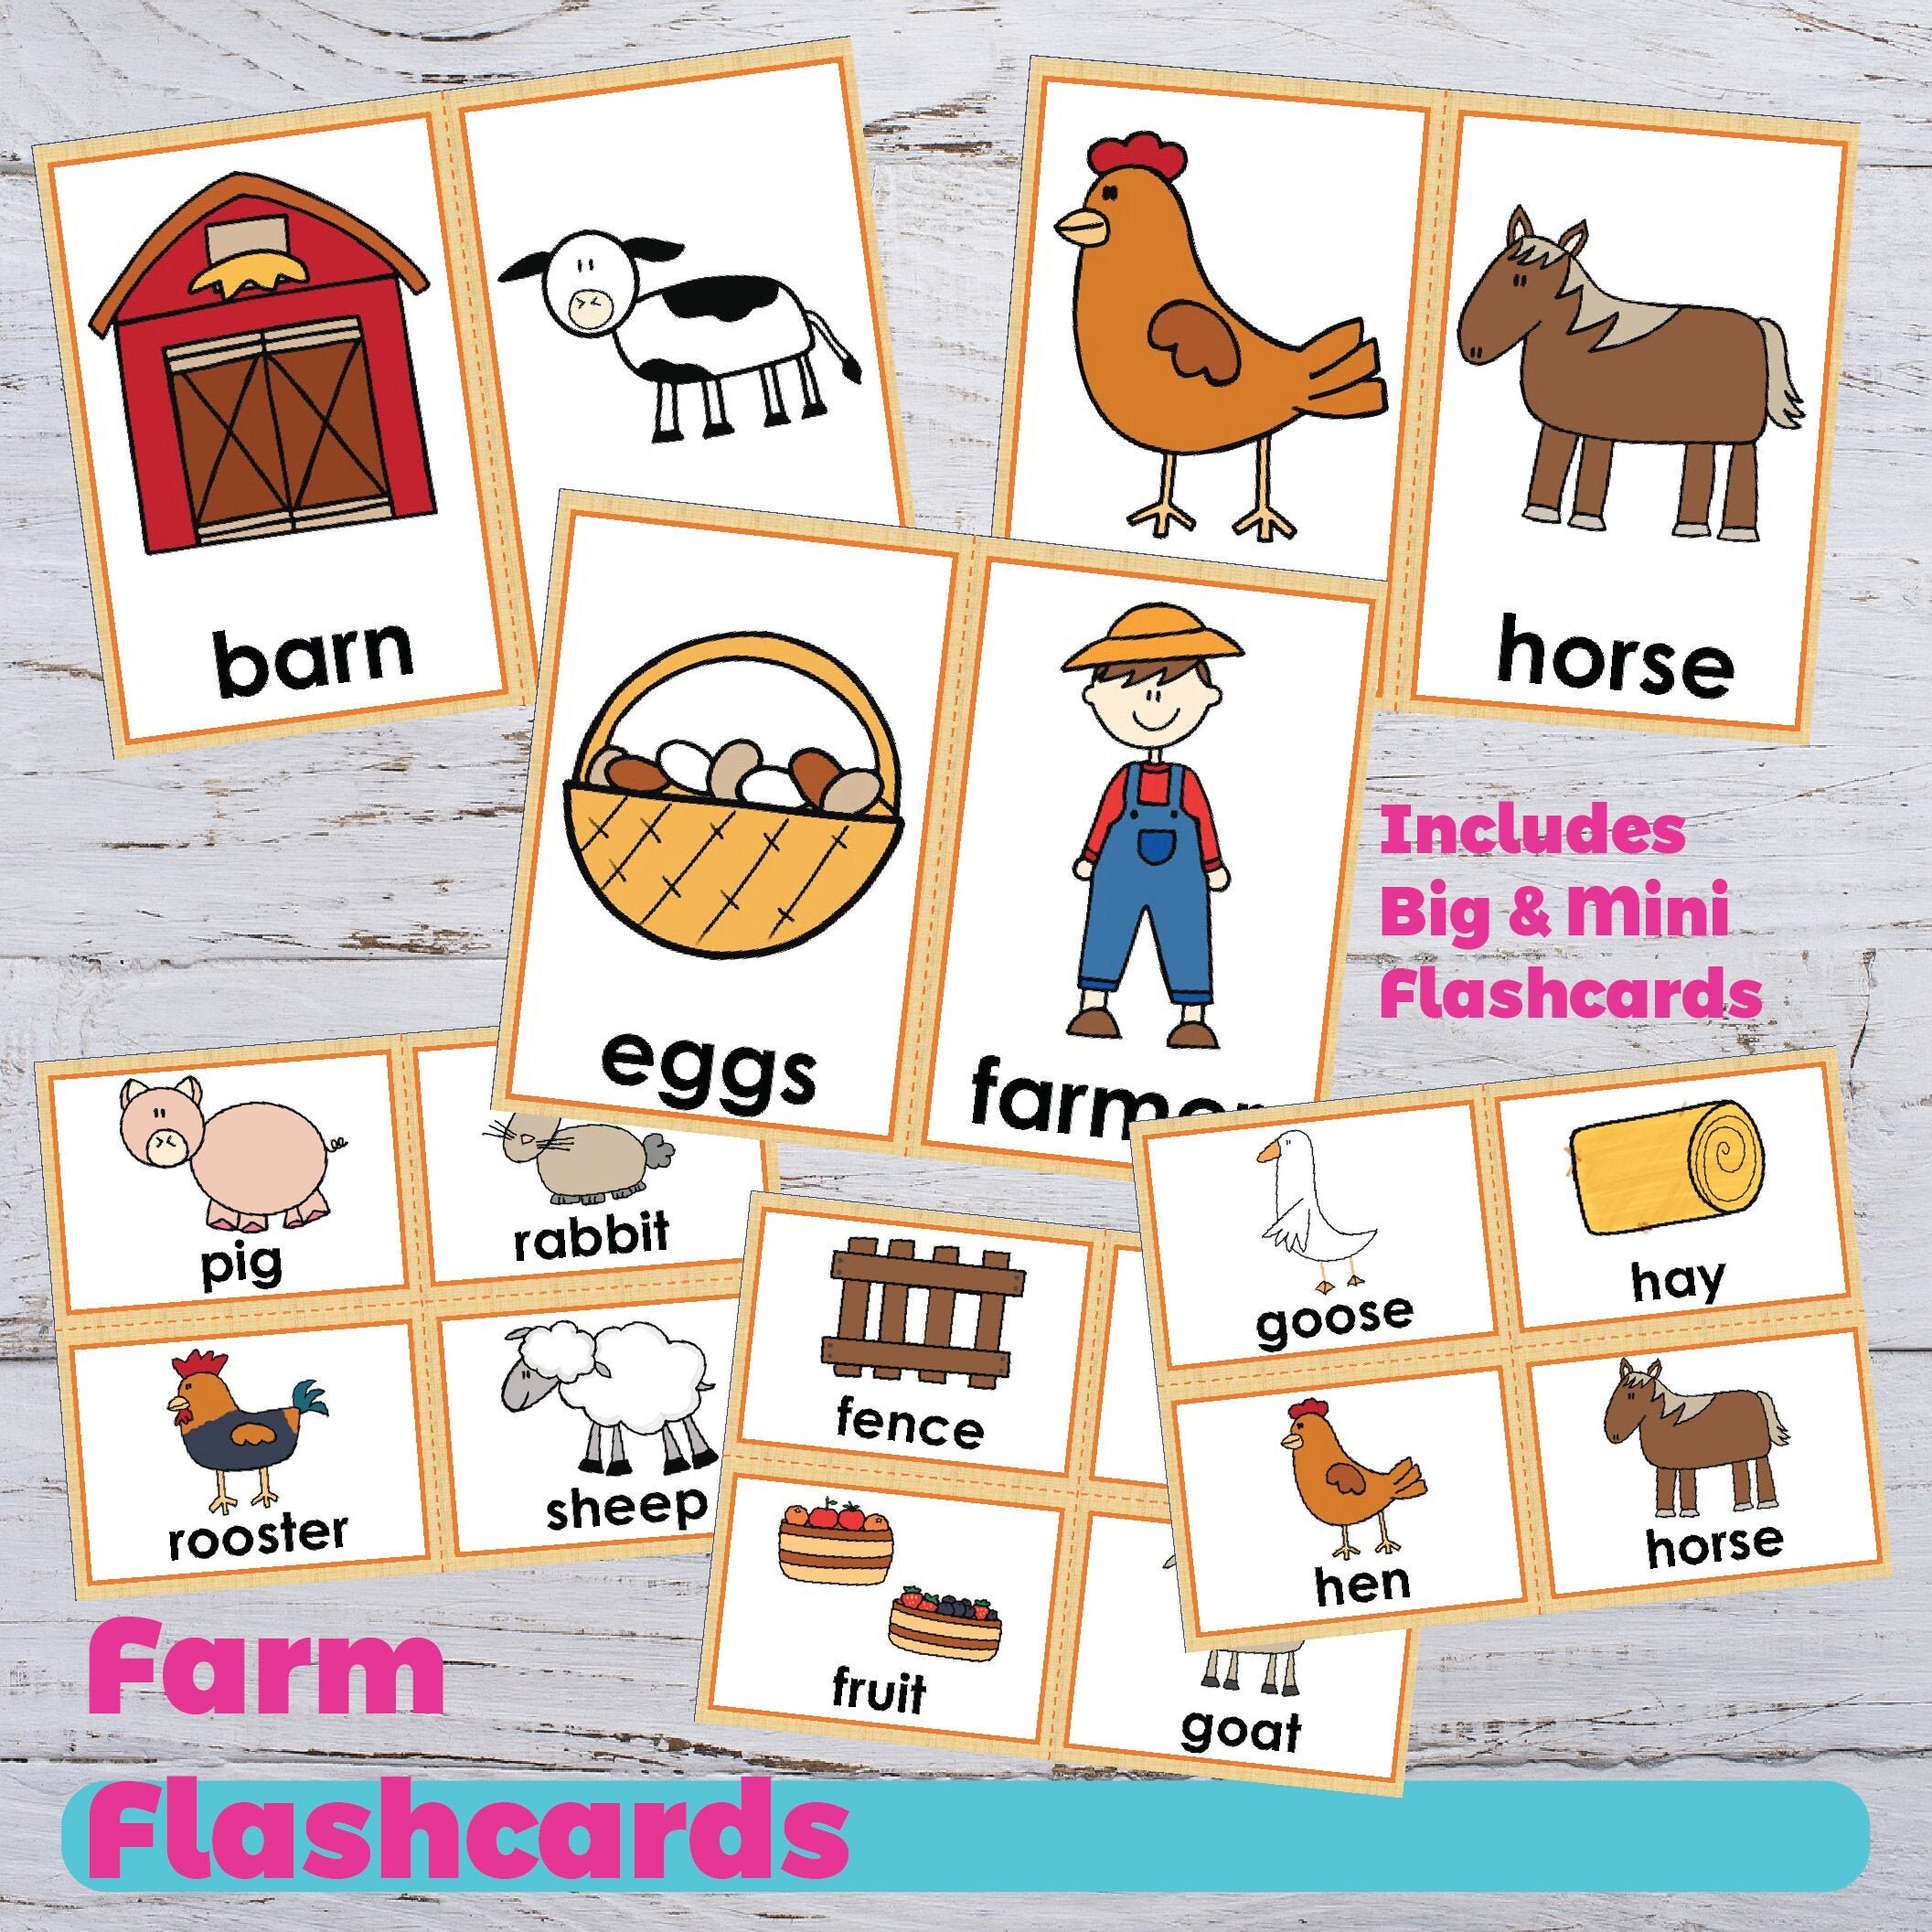 Vocabulary cards